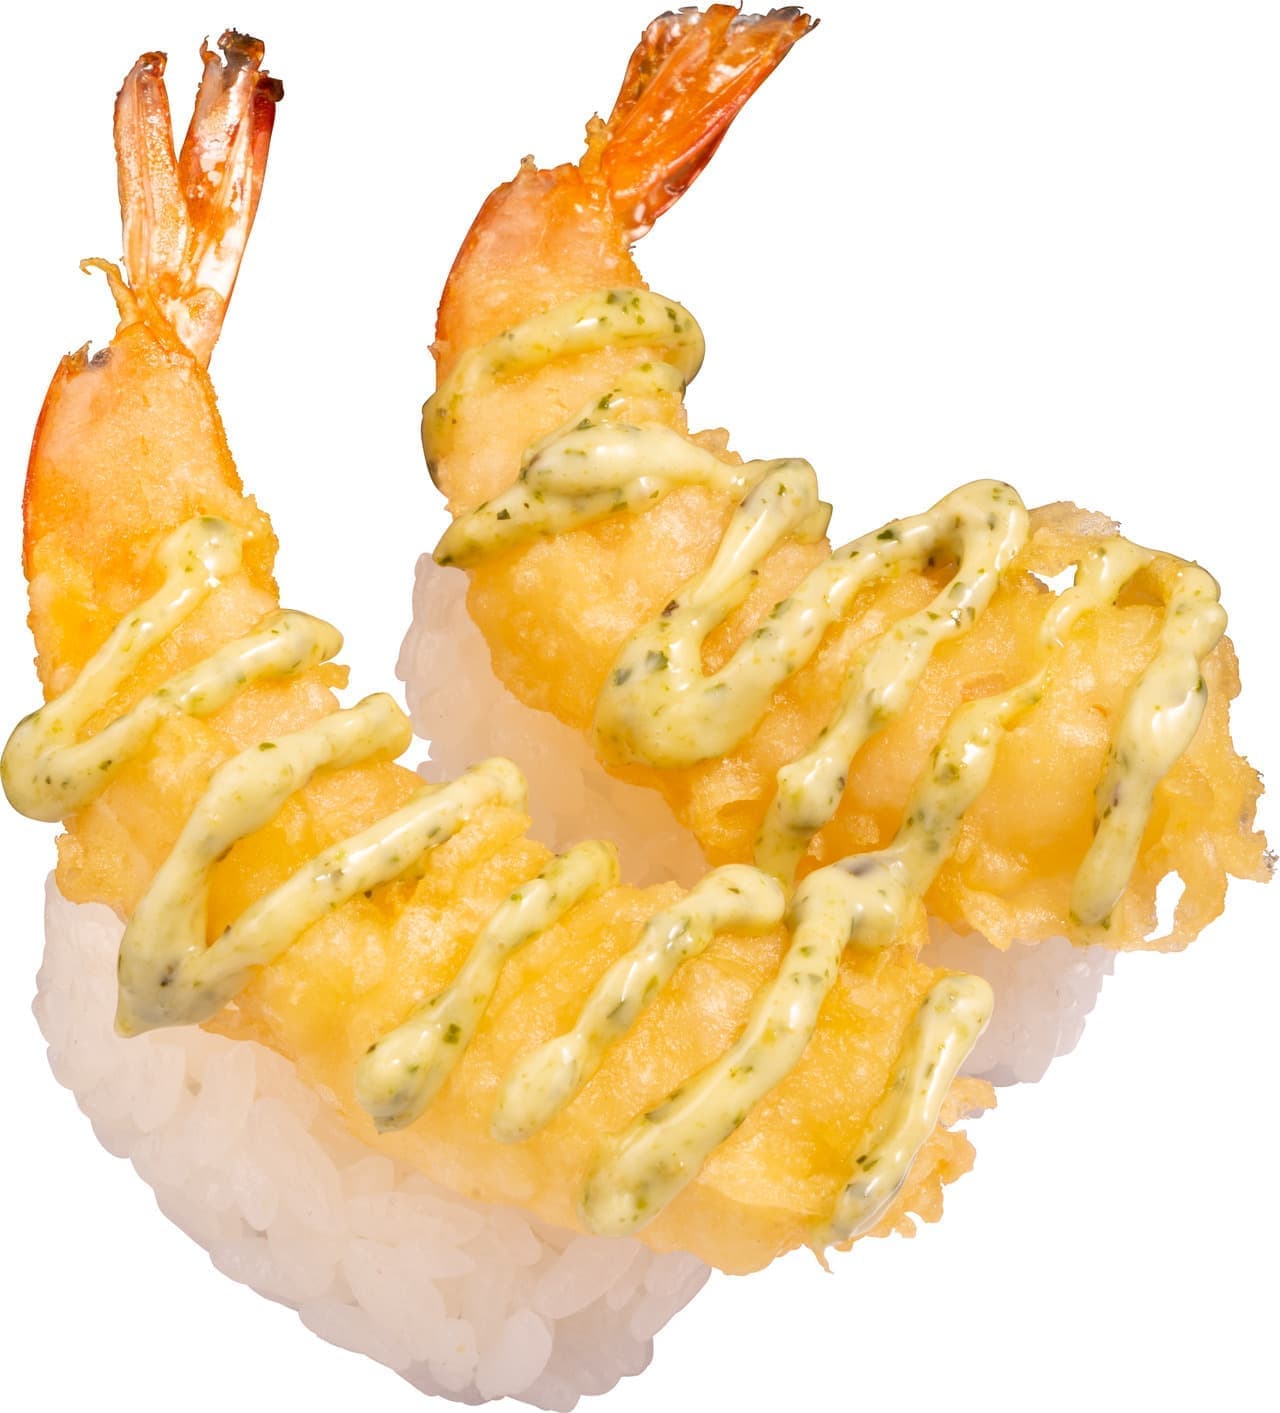 Kappa Sushi "Shrimp tempura nigiri basil mayo